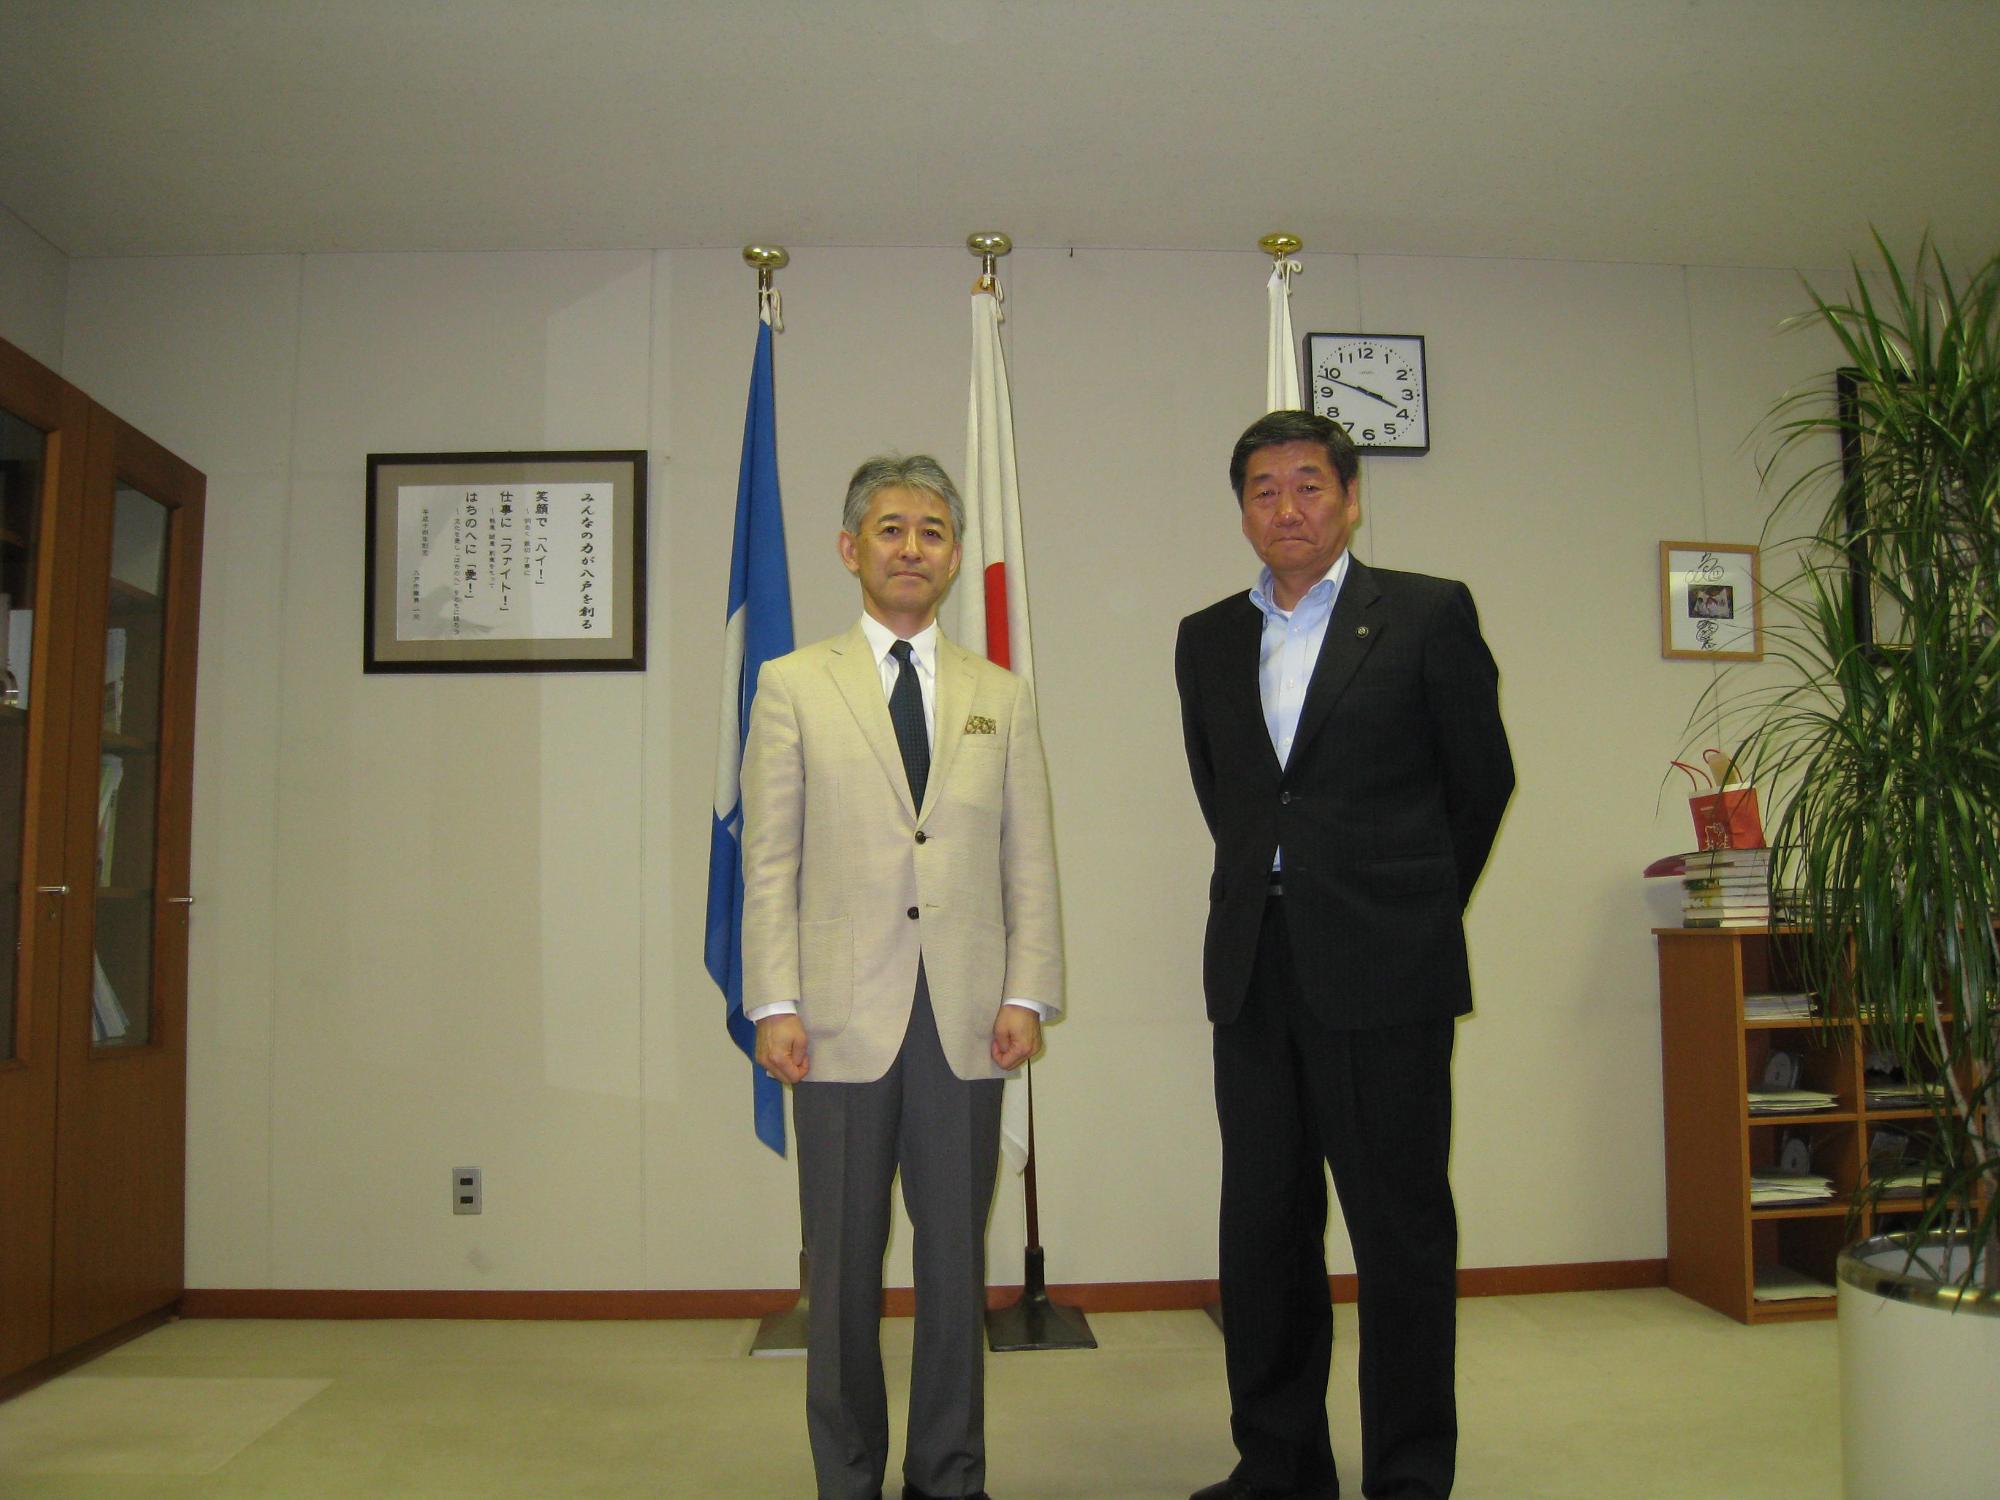 ハセガワススム前イラク特命全権大使が、小林市長に表敬訪問し、記念撮影している写真